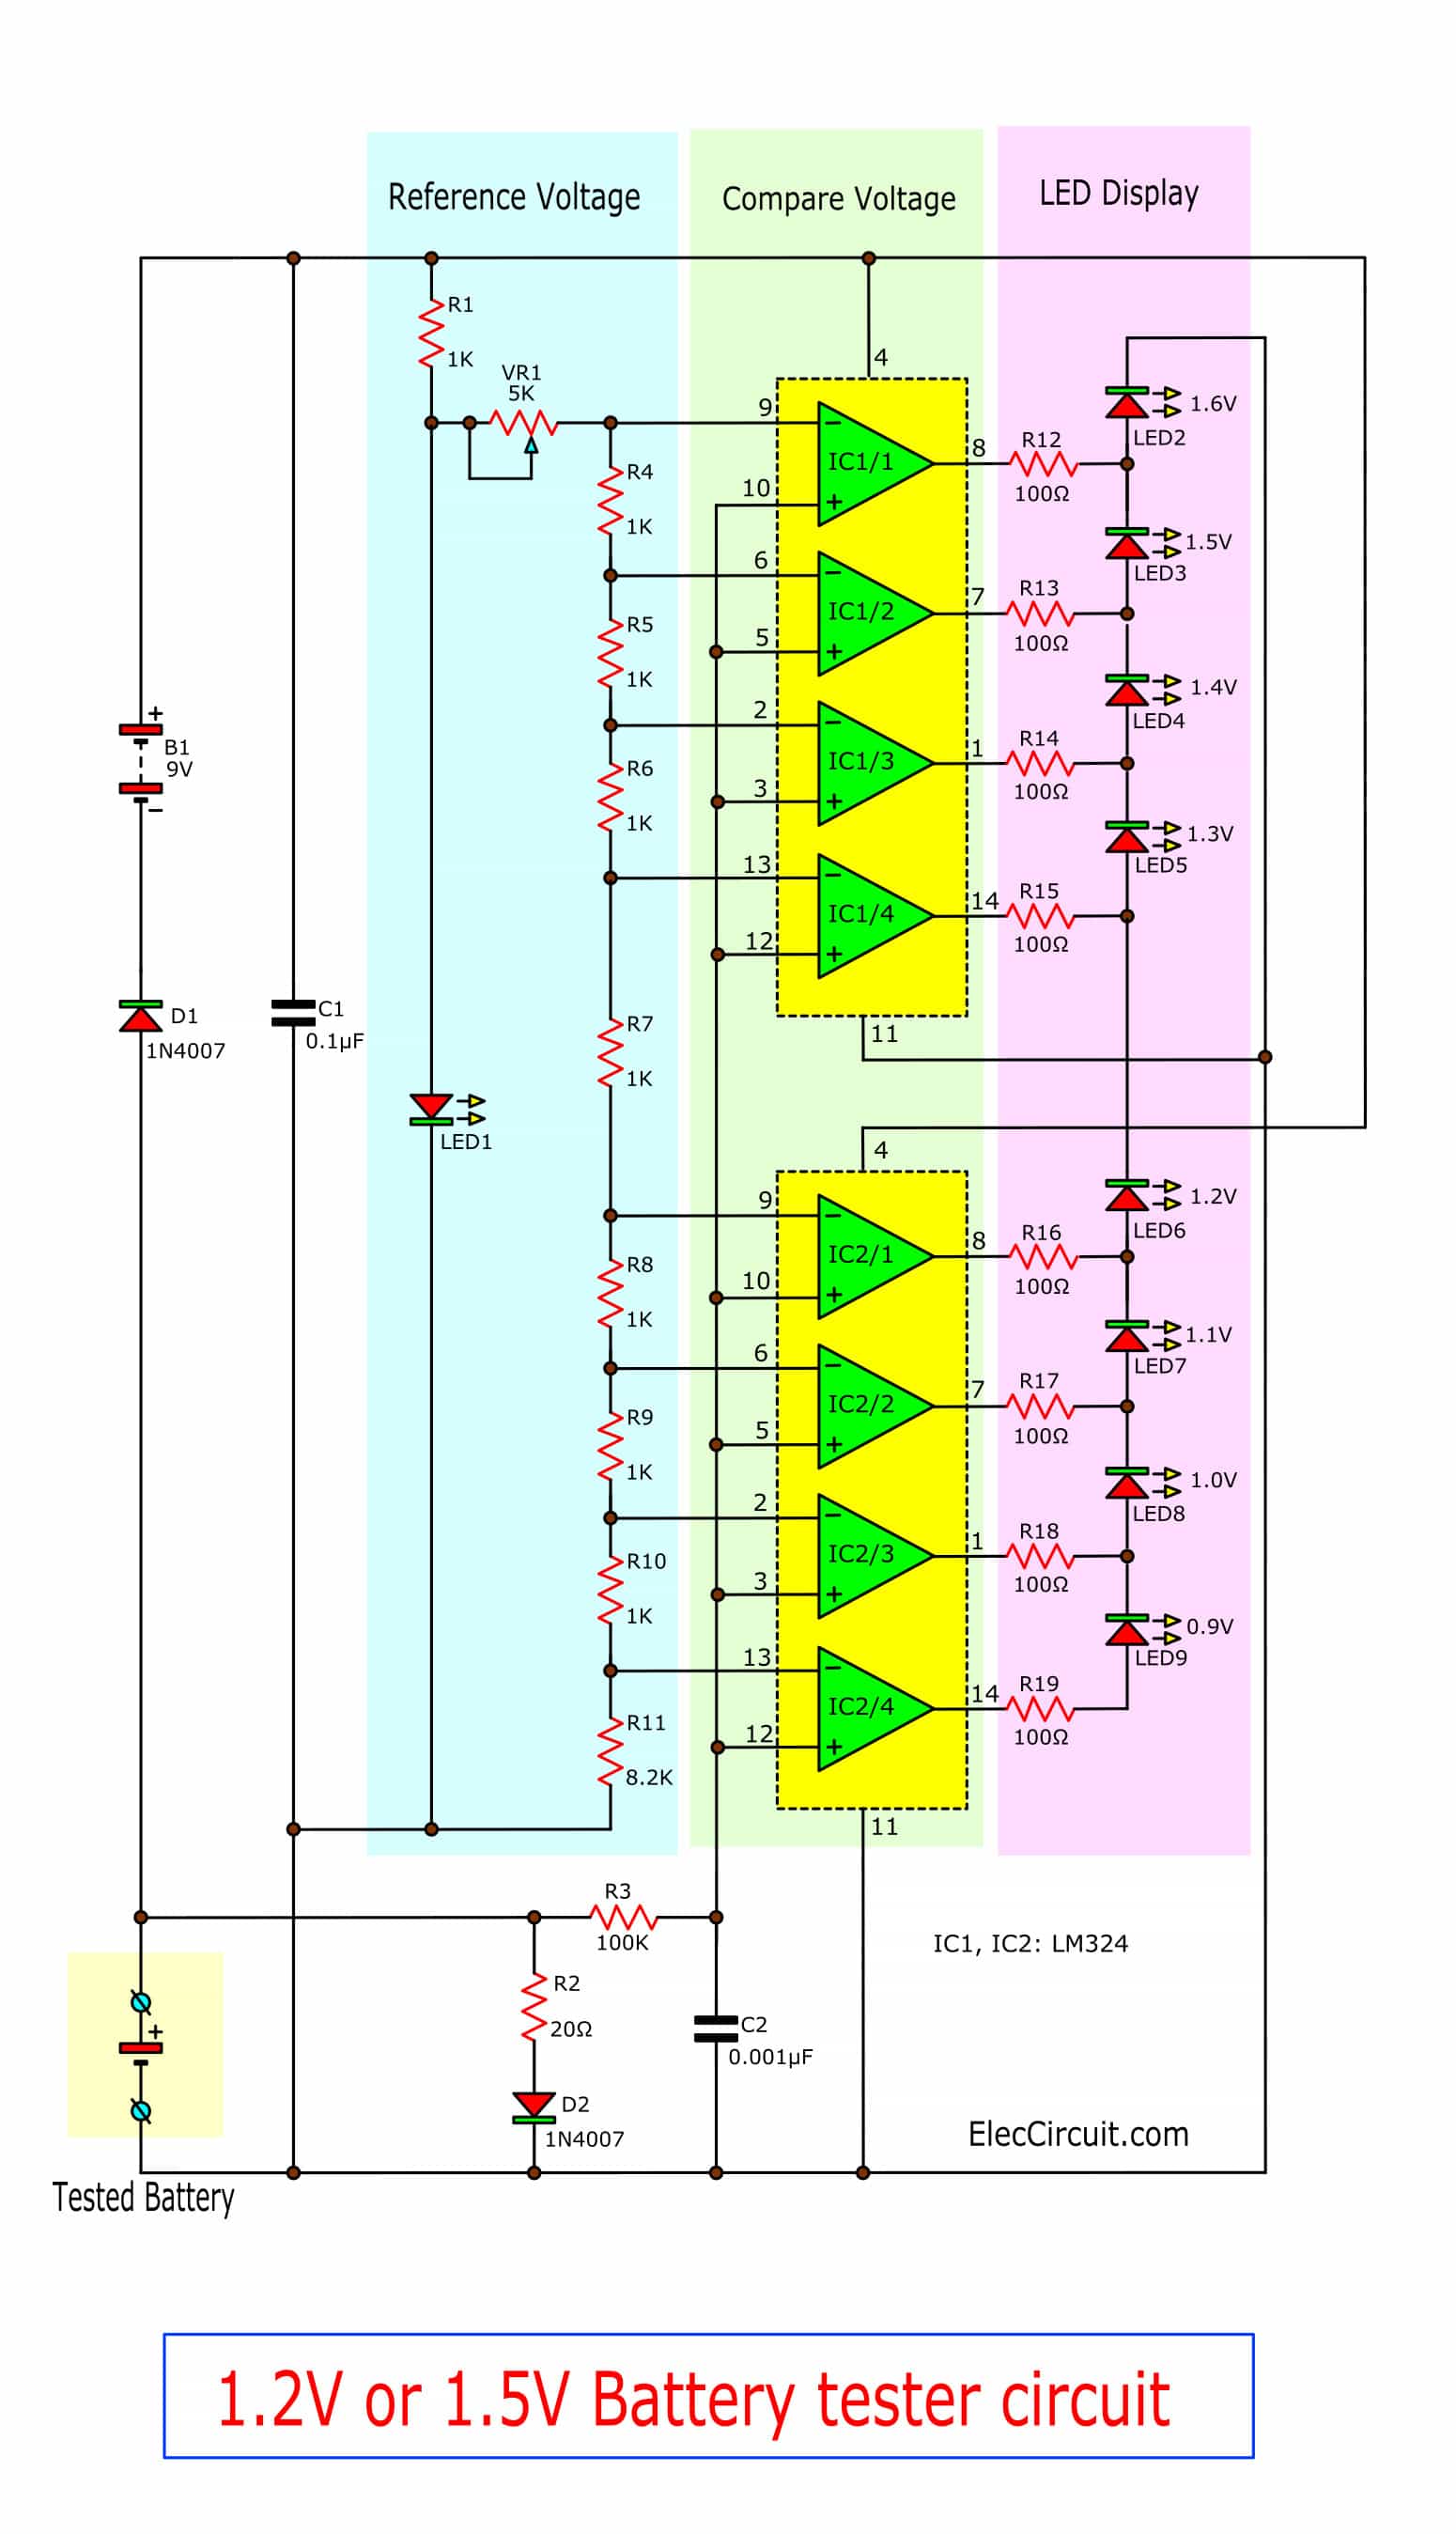 1.2V or 1.5V battery tester circuit using LM324